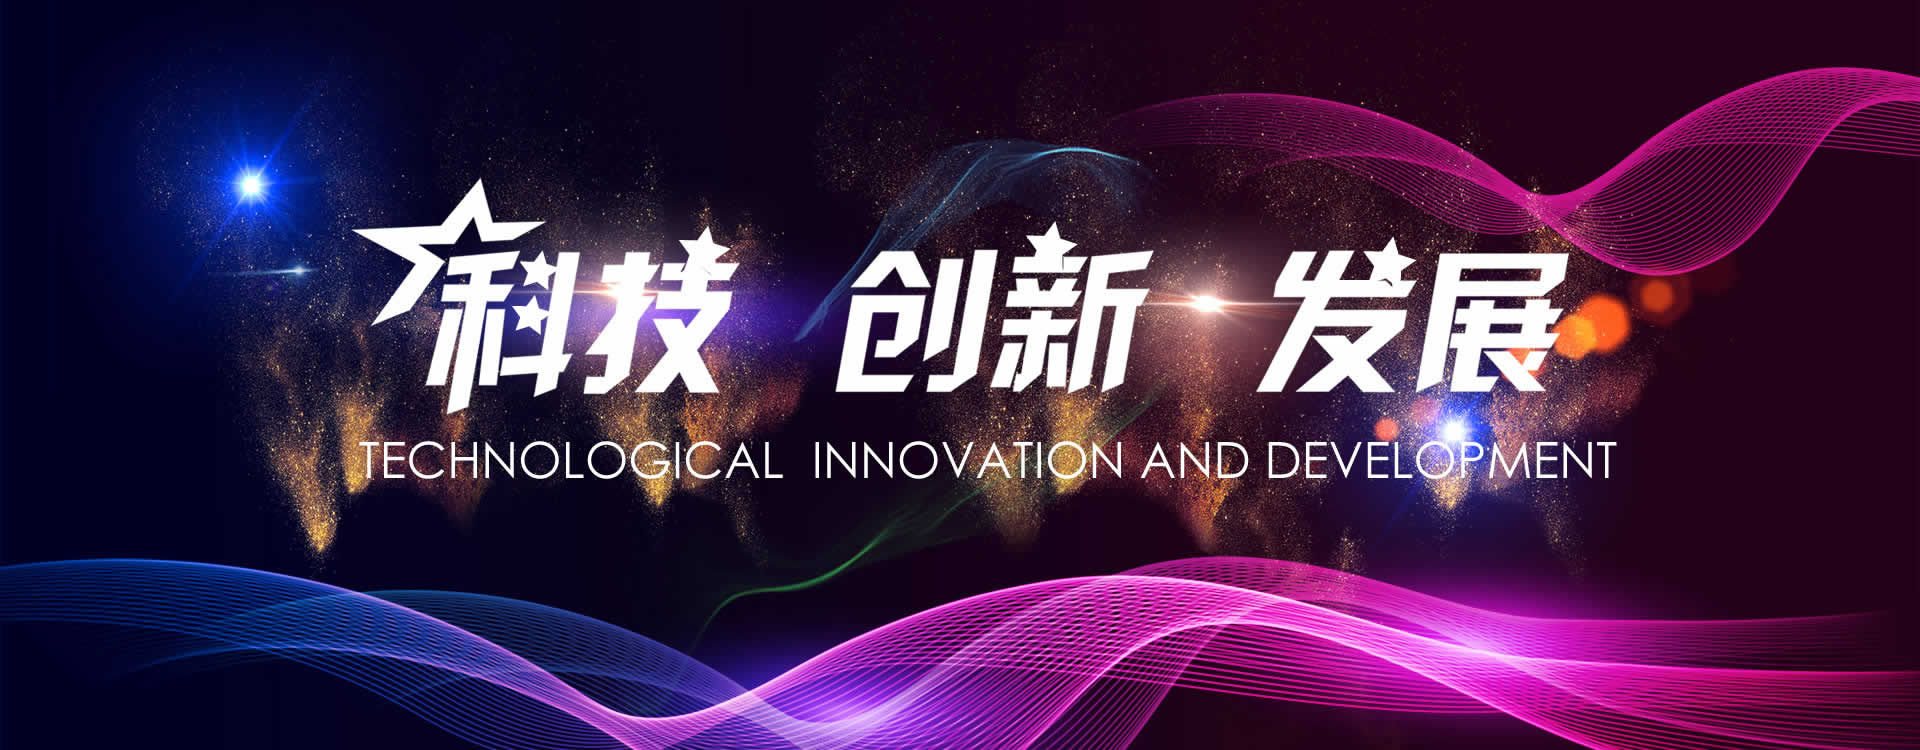 皇家88平台app下载(中国游)官方网站